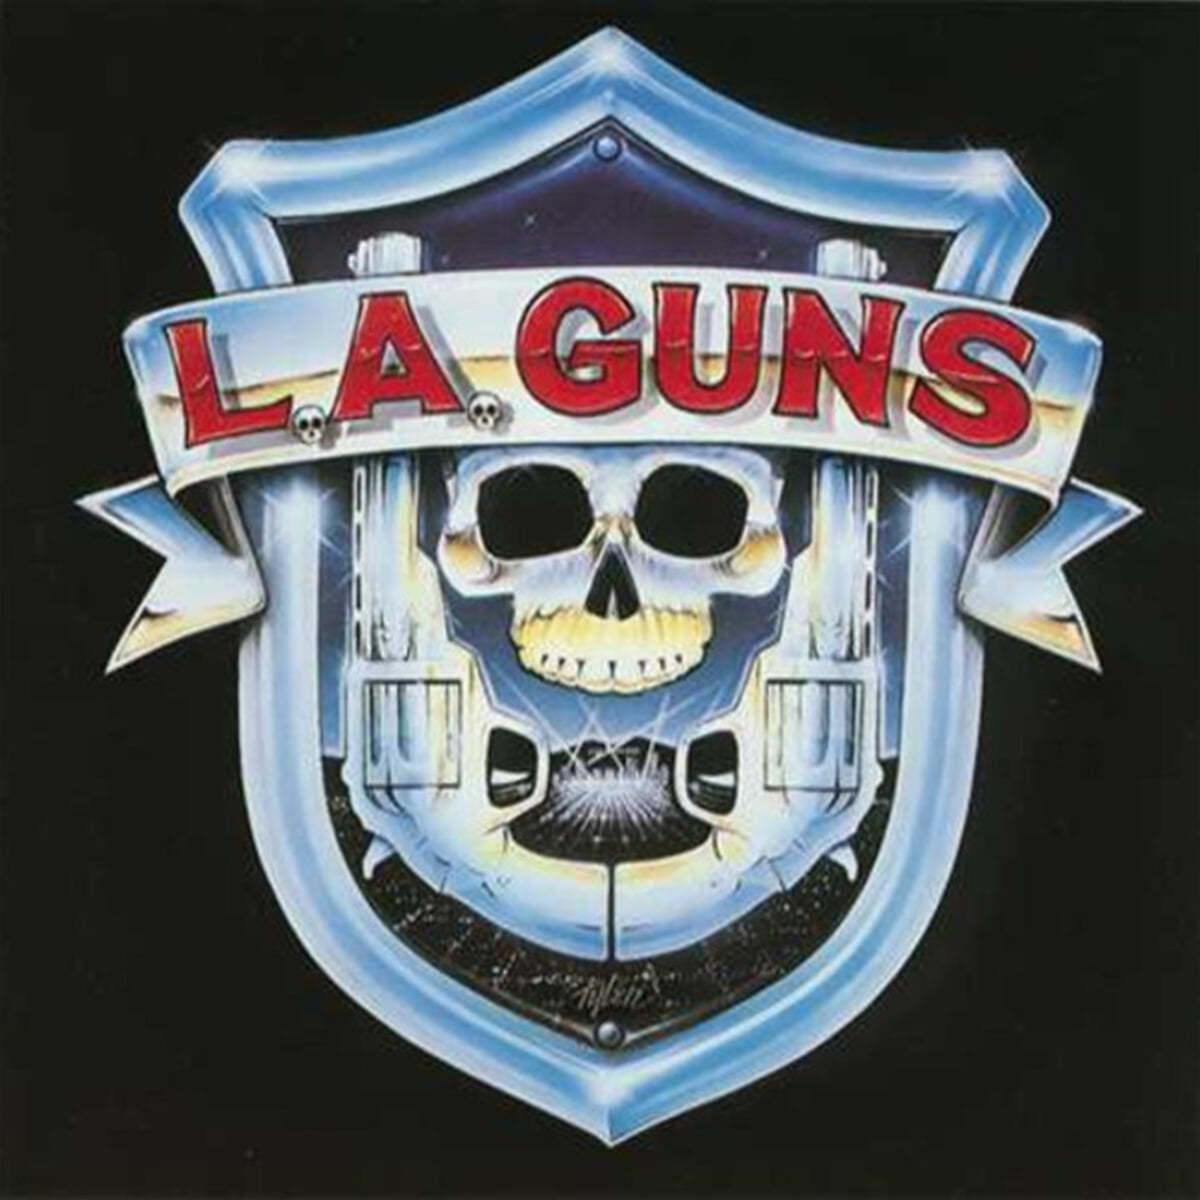 L.A. Guns (엘에이 건즈) - L.A. Guns